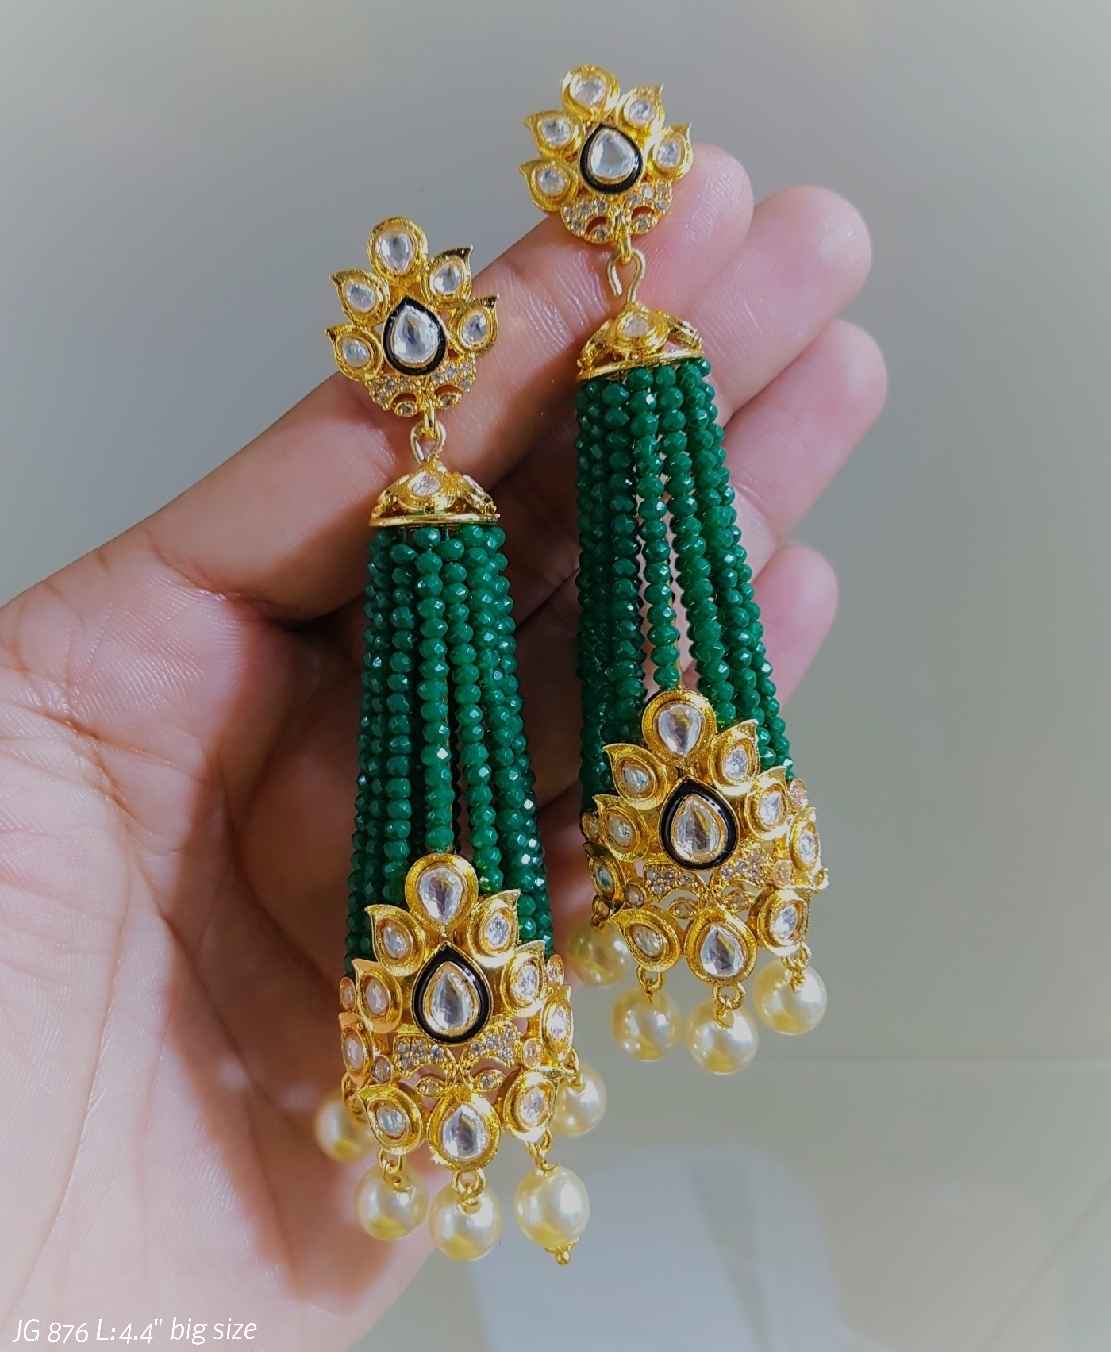 Ritzi Victorian inspired earrings